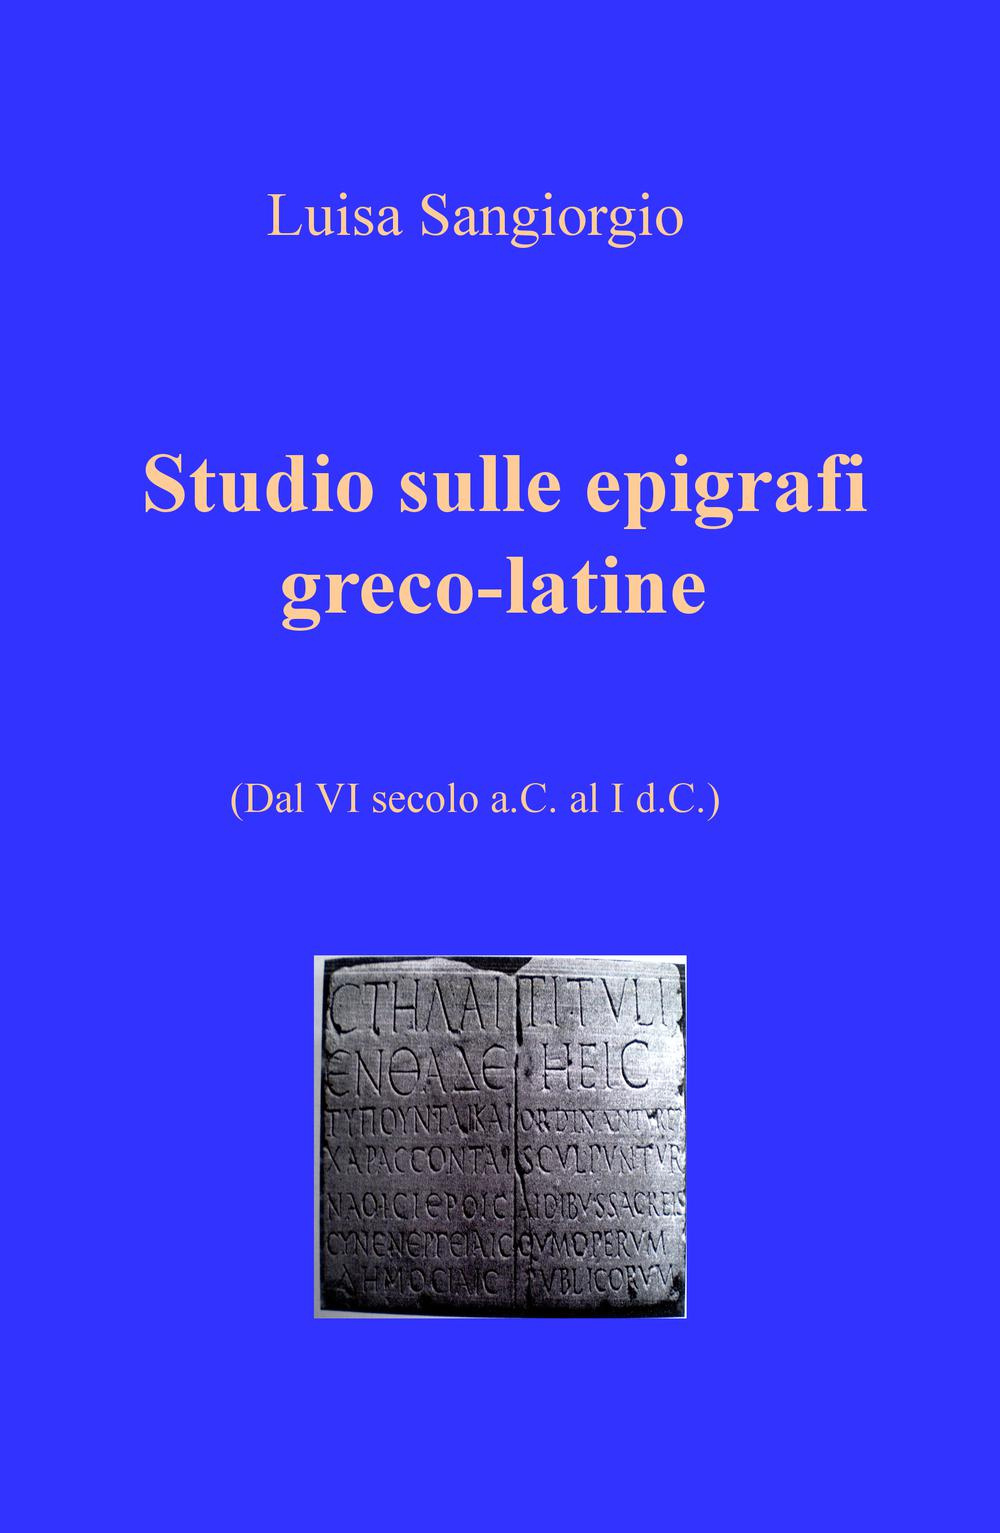 Studio sulle epigrafi greco-latine. Dal VI secolo a.C. al I d.C.. Vol. 1